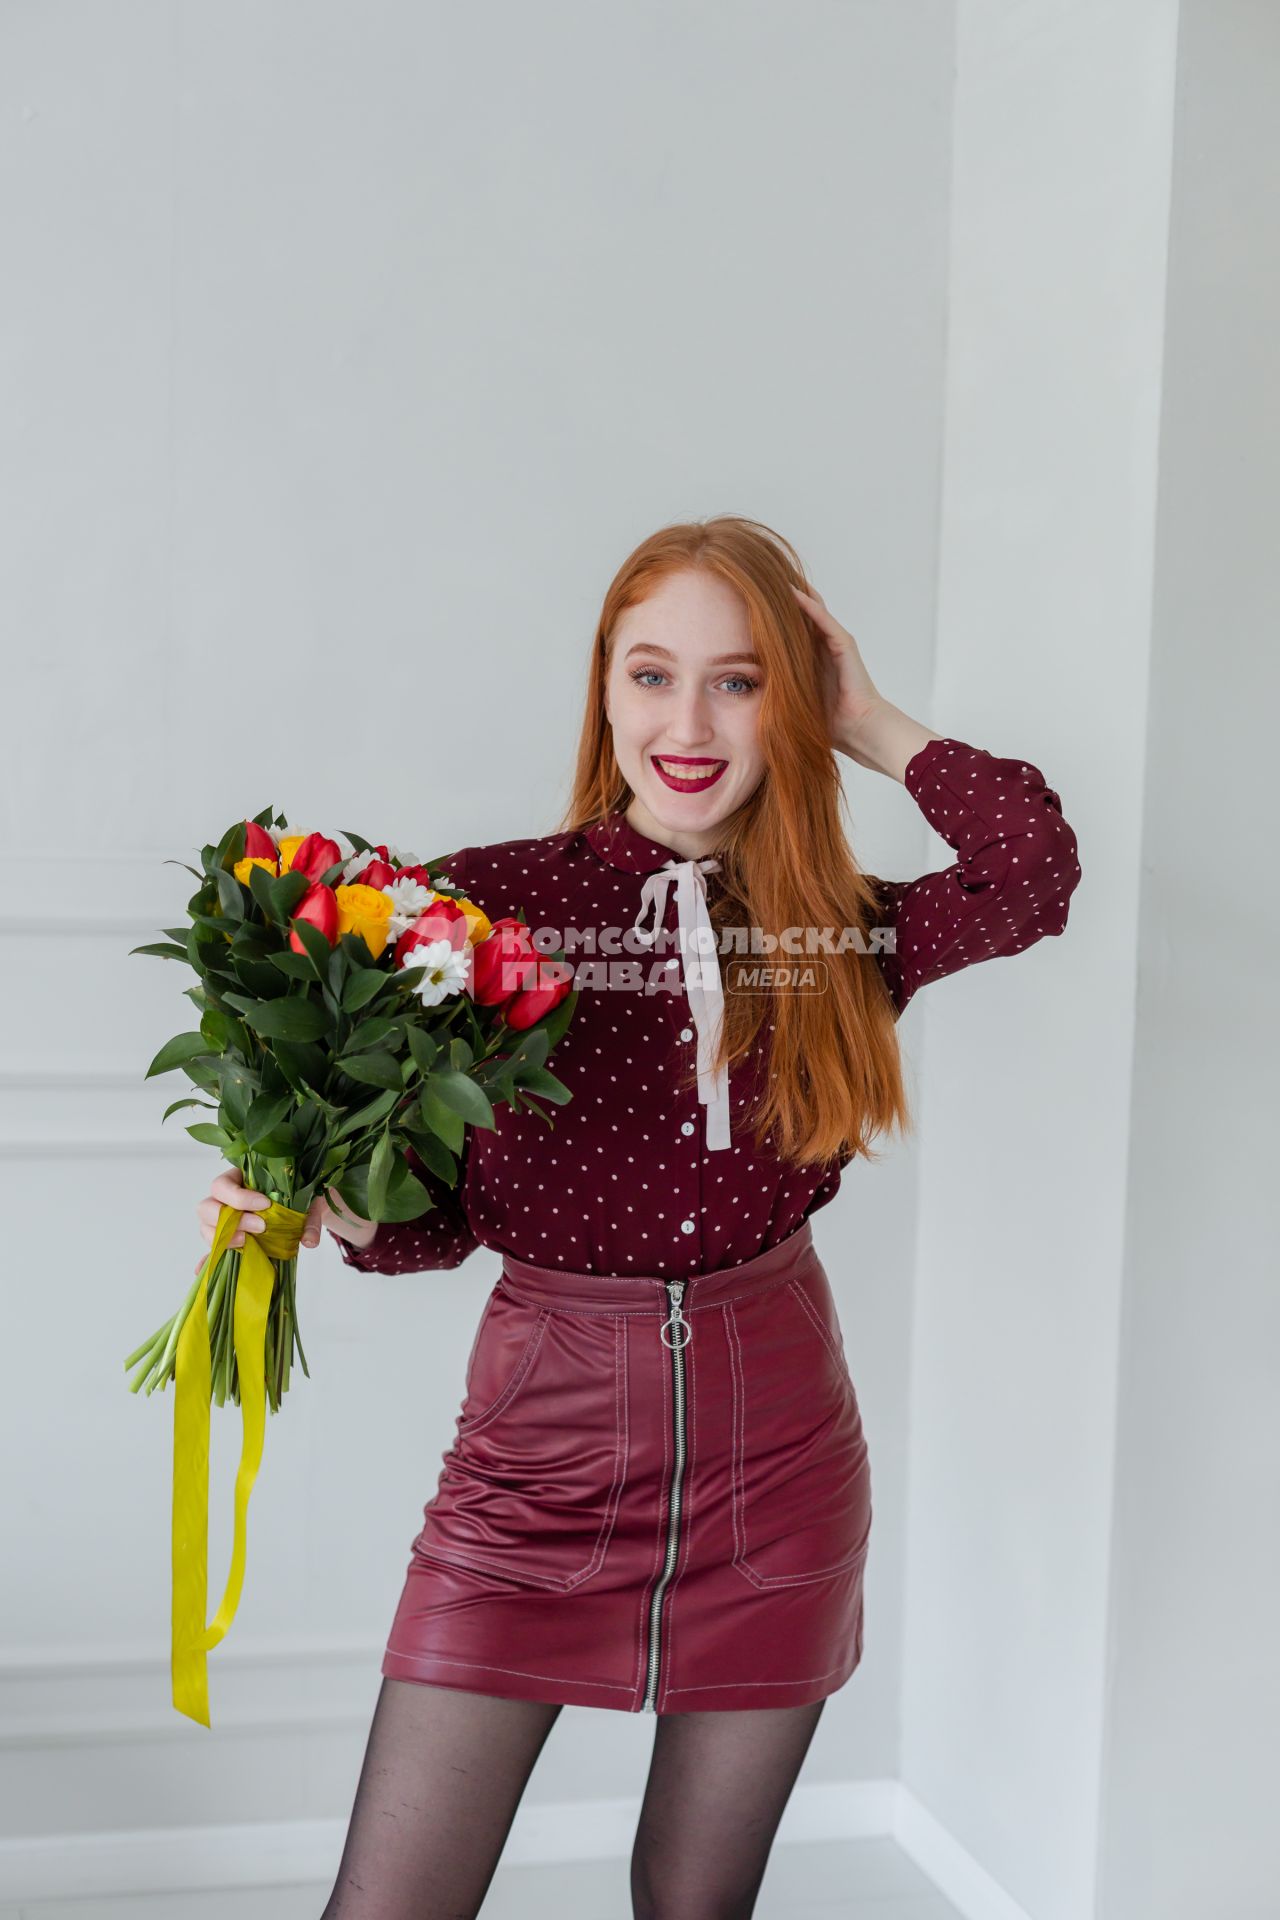 Красноярск. Девушка держит в руках букет цветов.